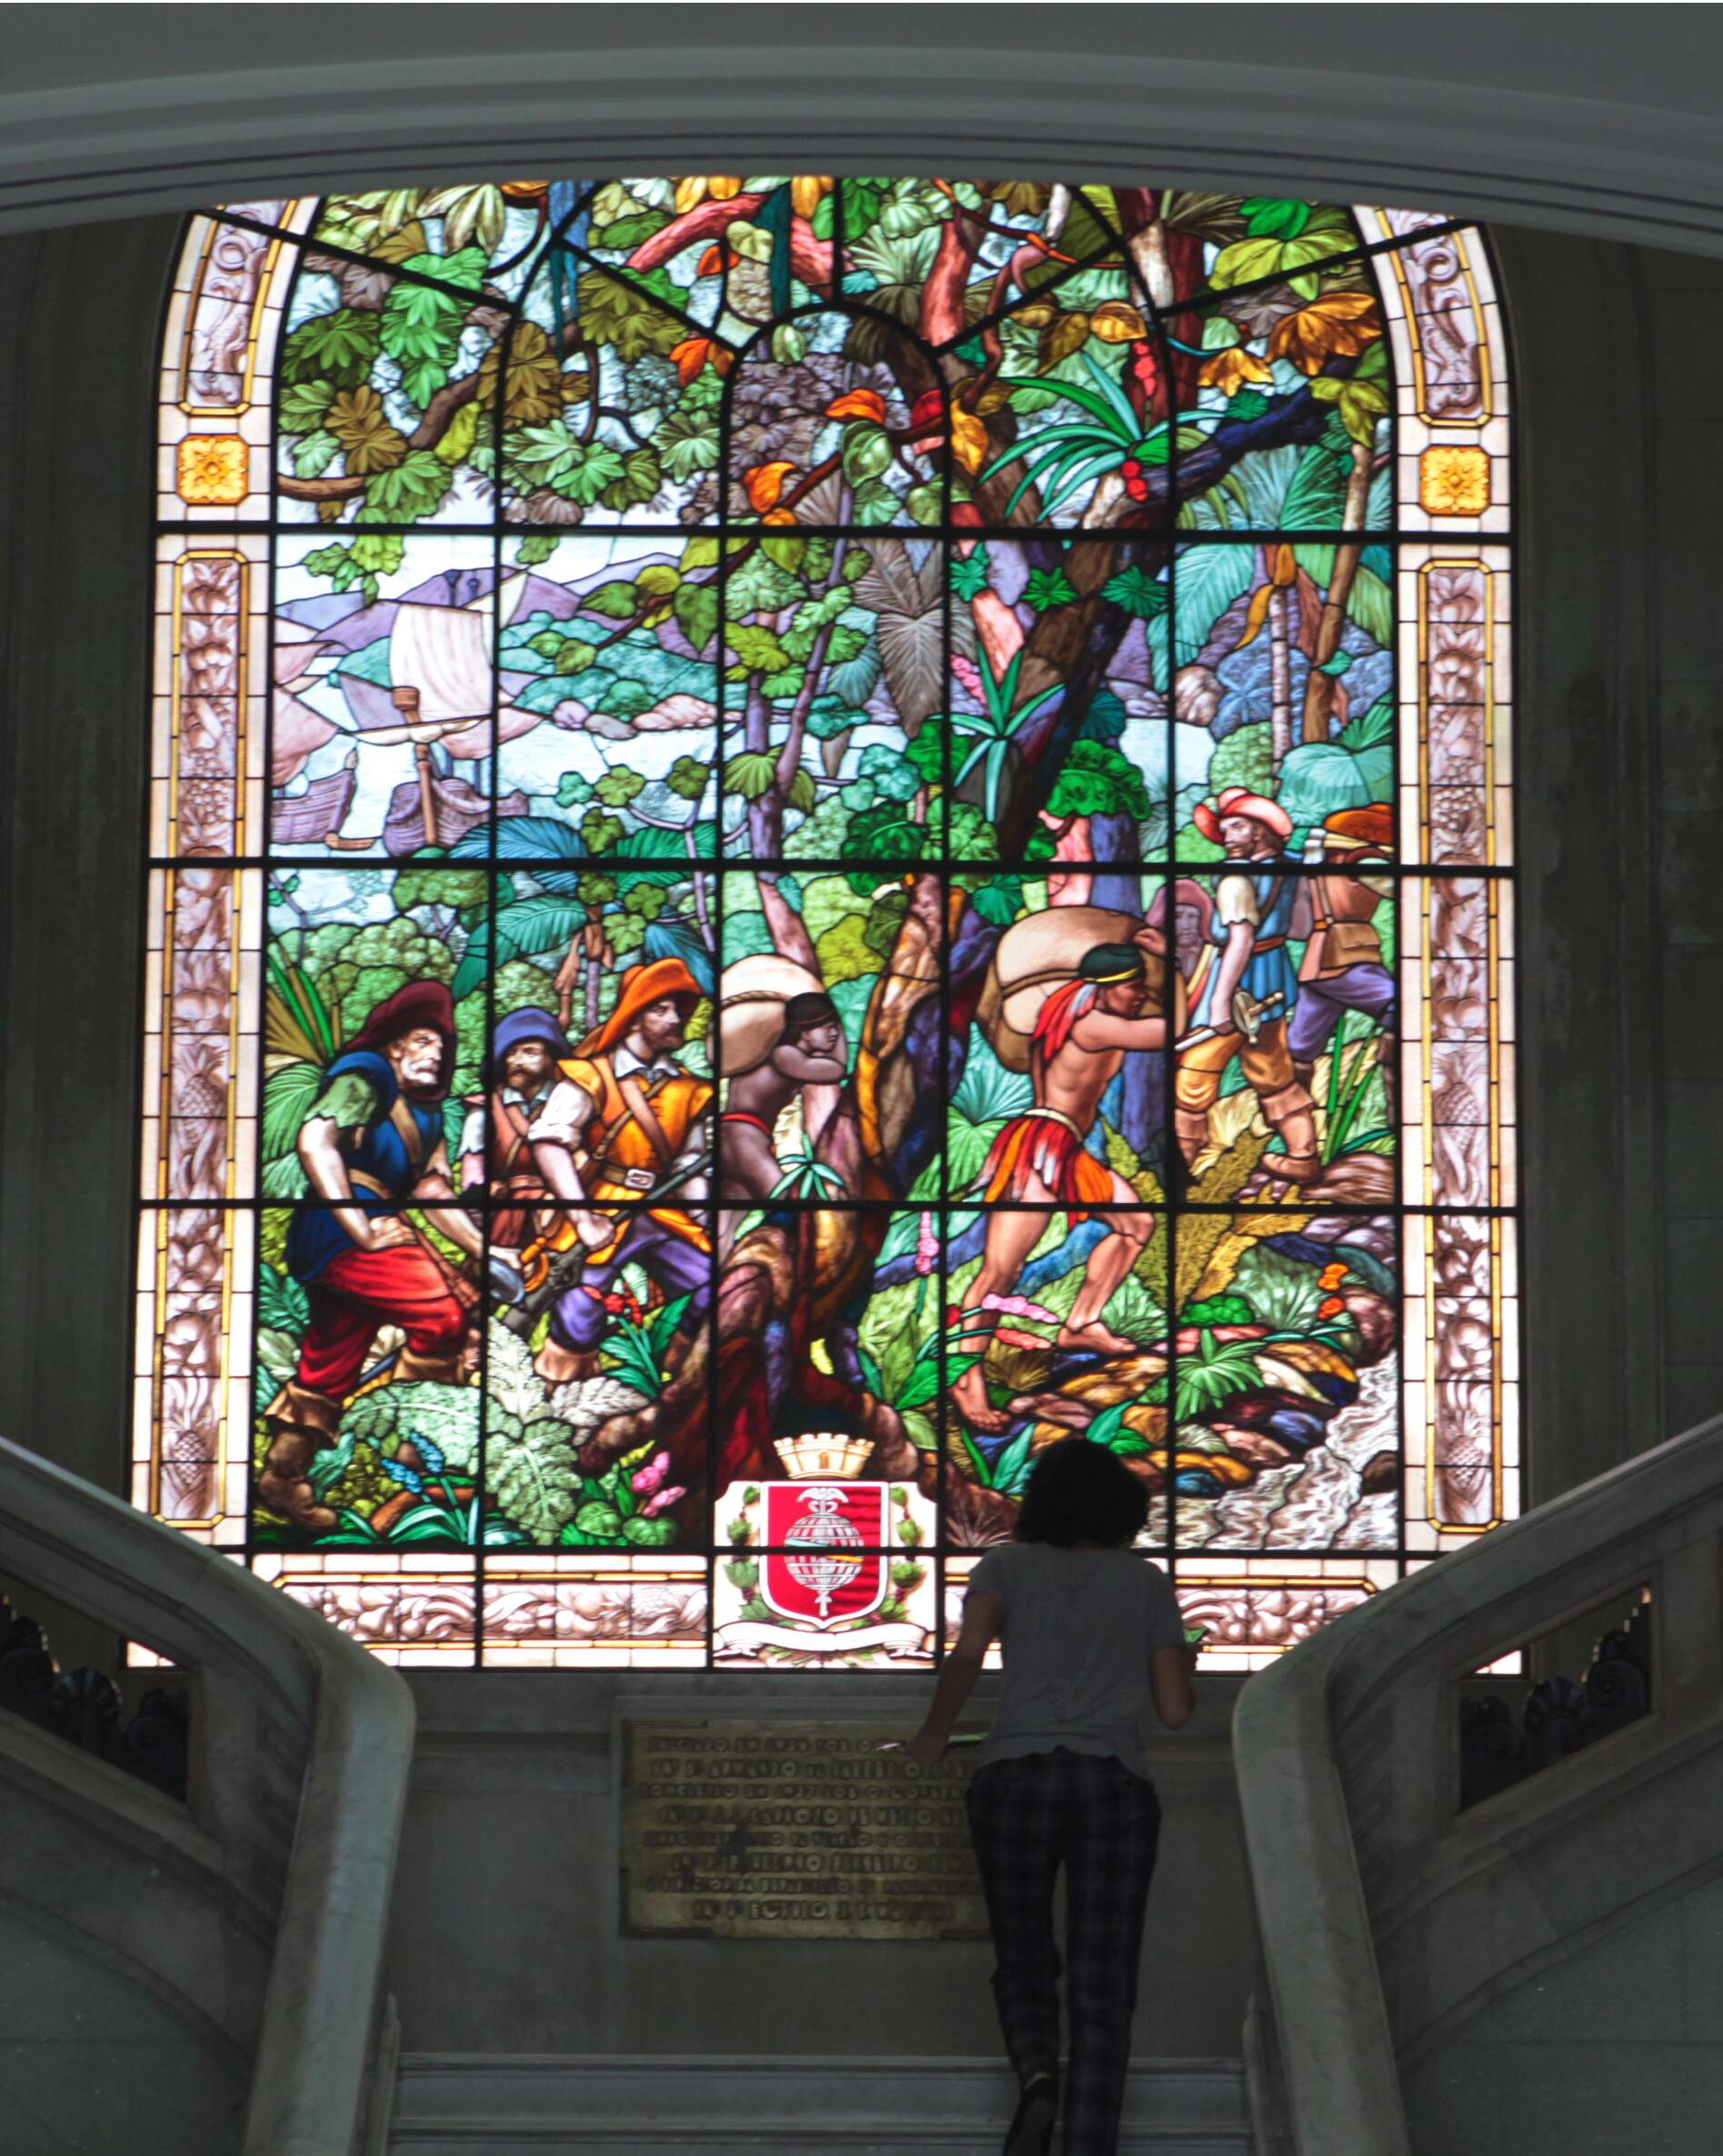 Os vitrais, com motivos da História de São Paulo e do Brasil, são uma das riquezas do palácio